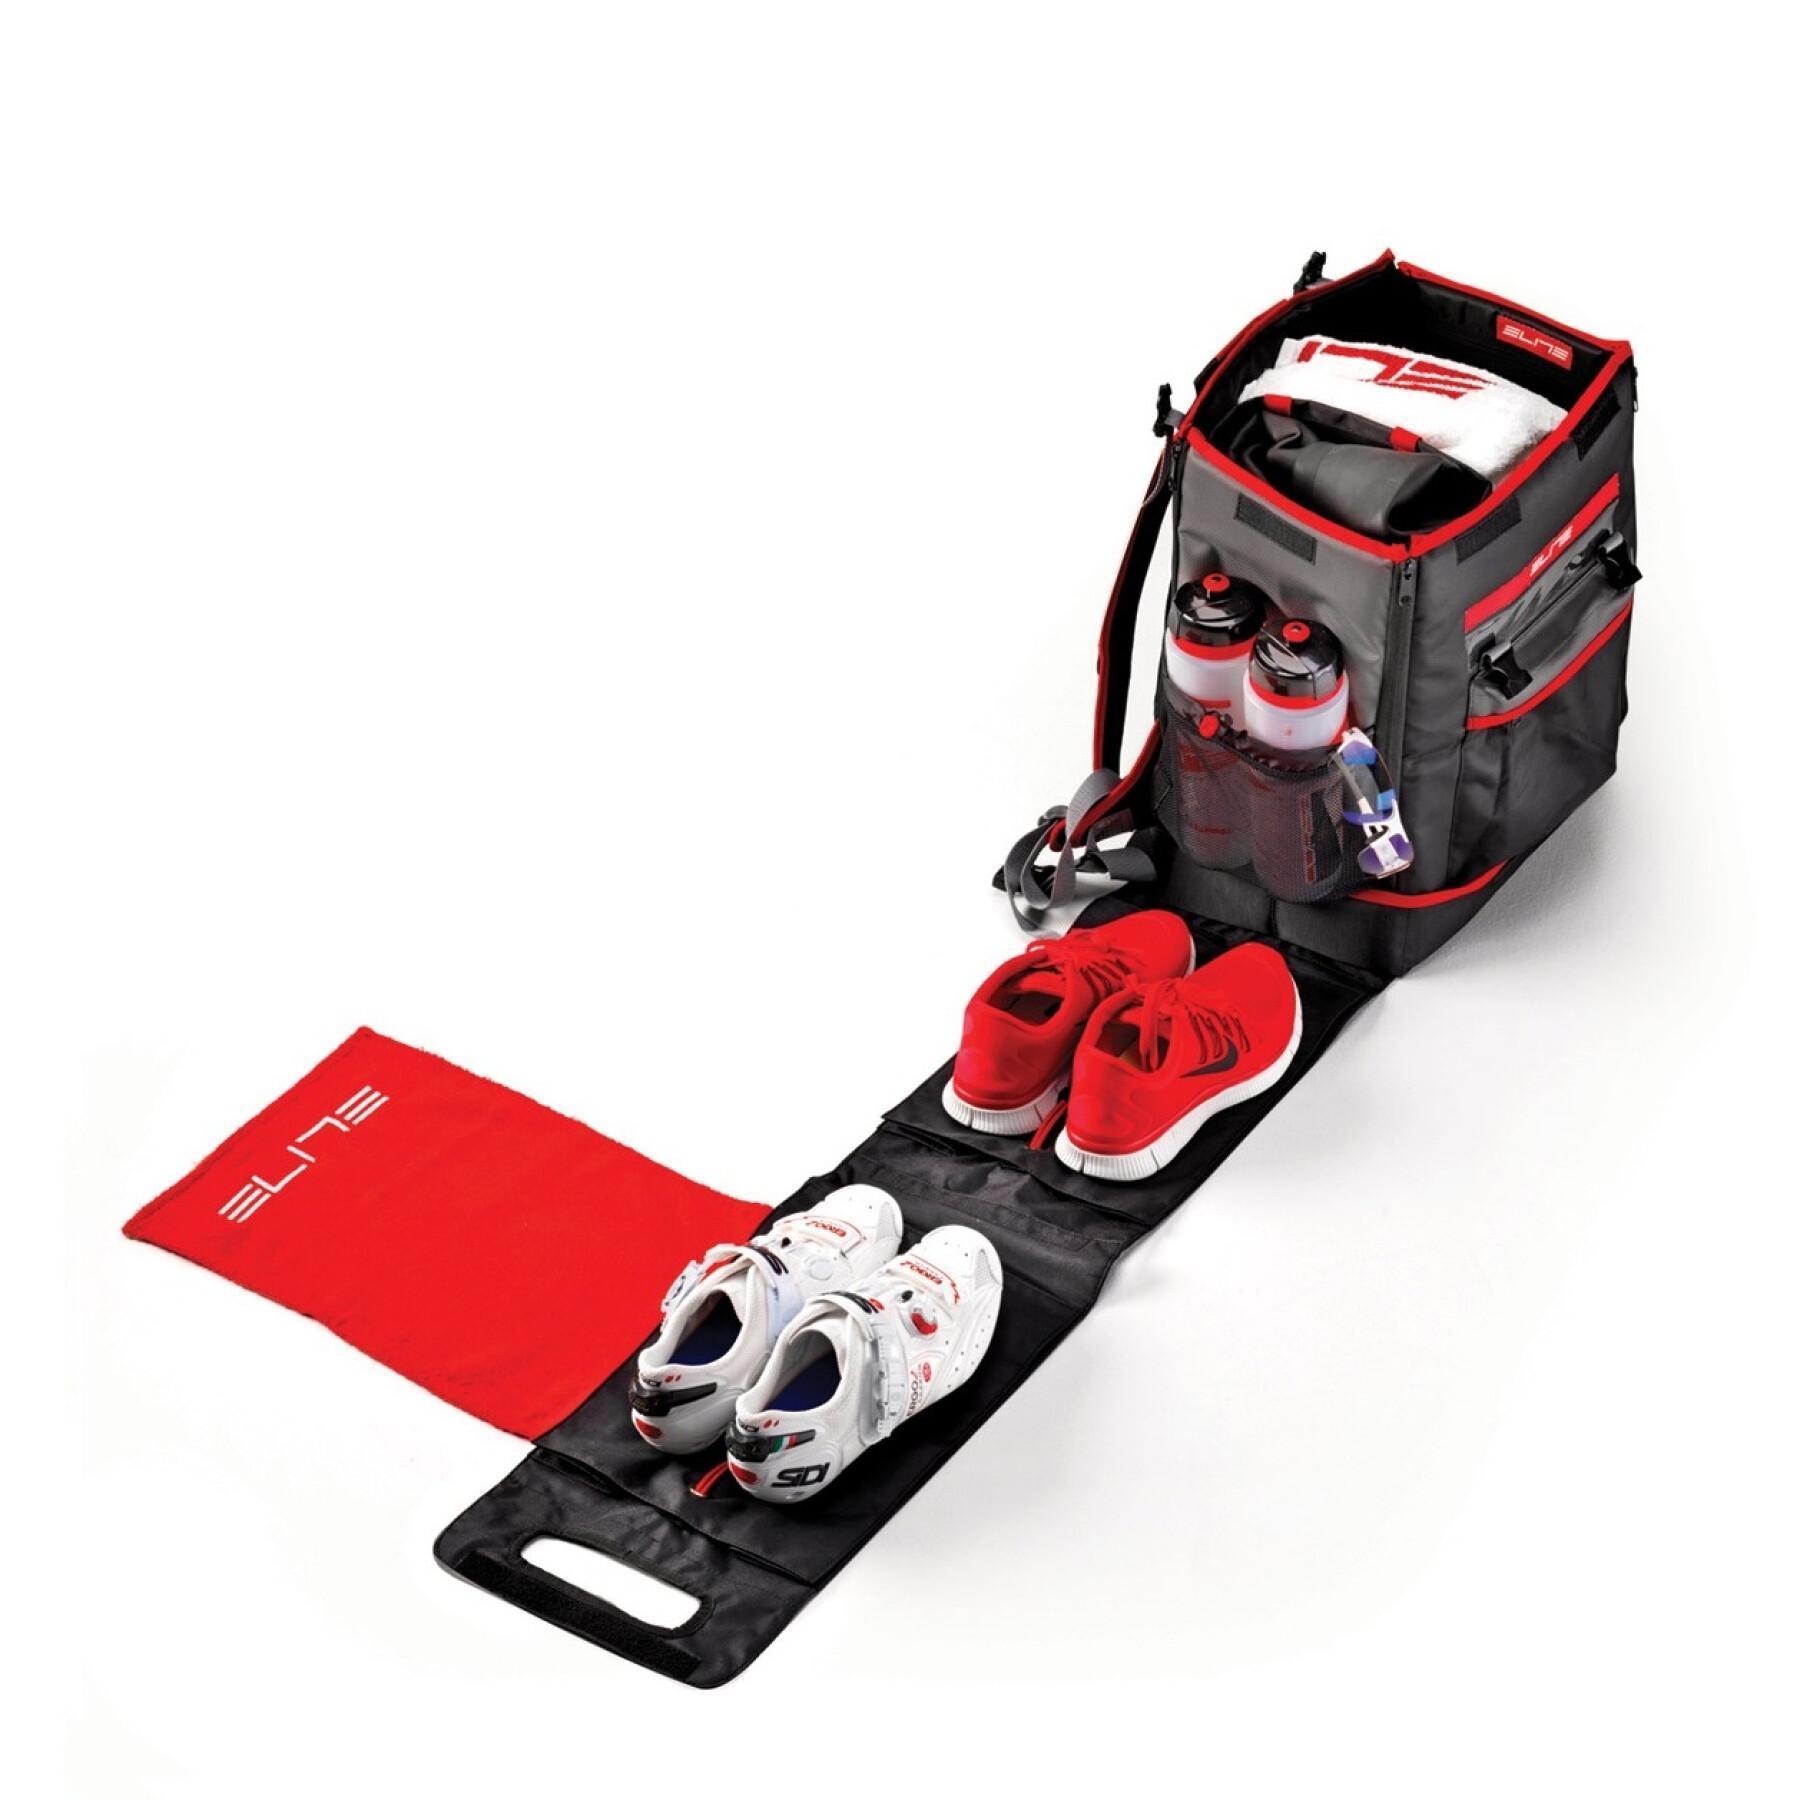 Speciell ryggsäck för triathlon Elite Tri Box